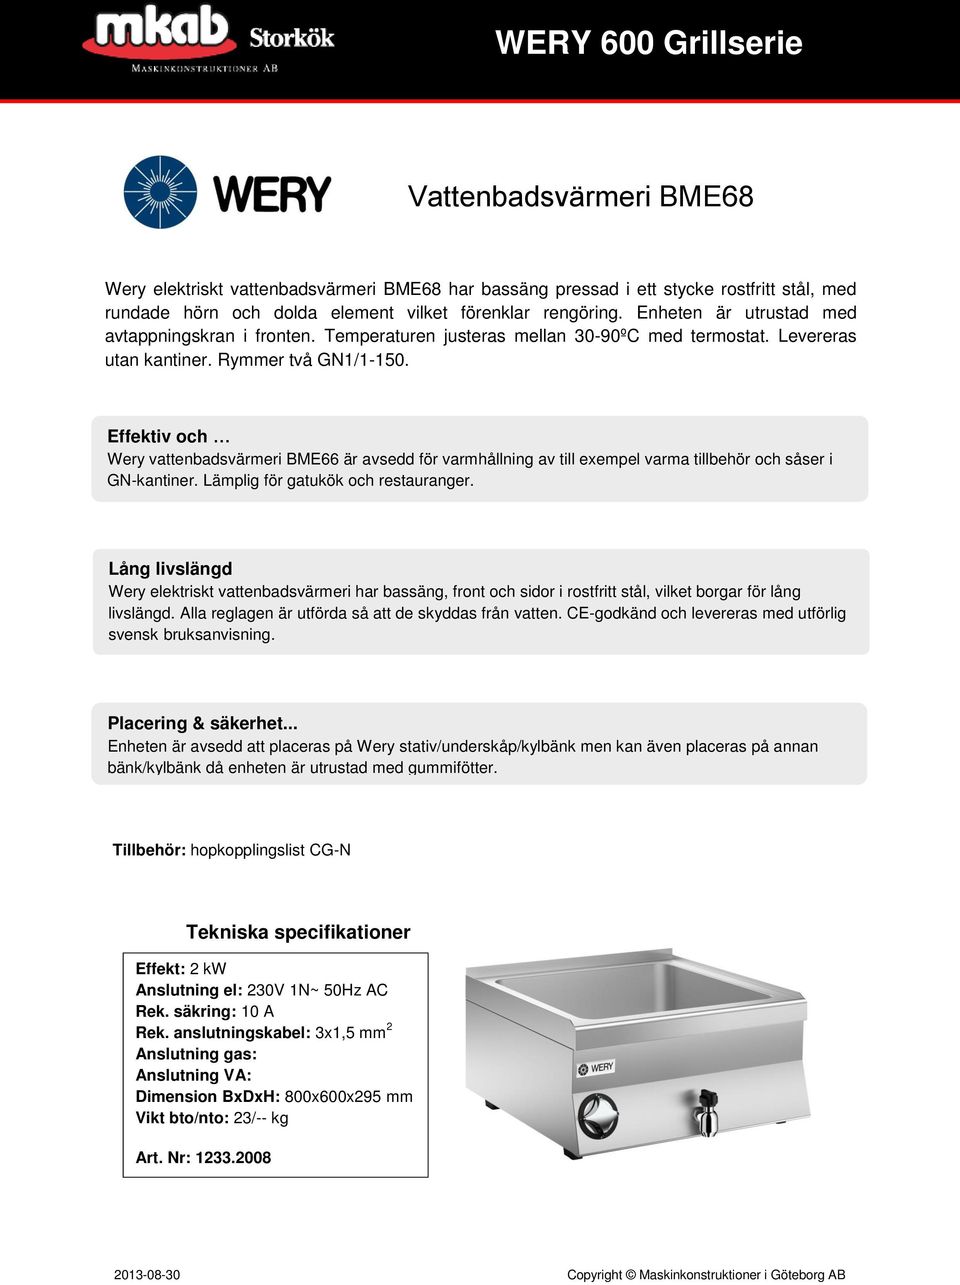 Effektiv och Wery vattenbadsvärmeri BME66 är avsedd för varmhållning av till exempel varma tillbehör och såser i GN-kantiner. Lämplig för gatukök och restauranger.